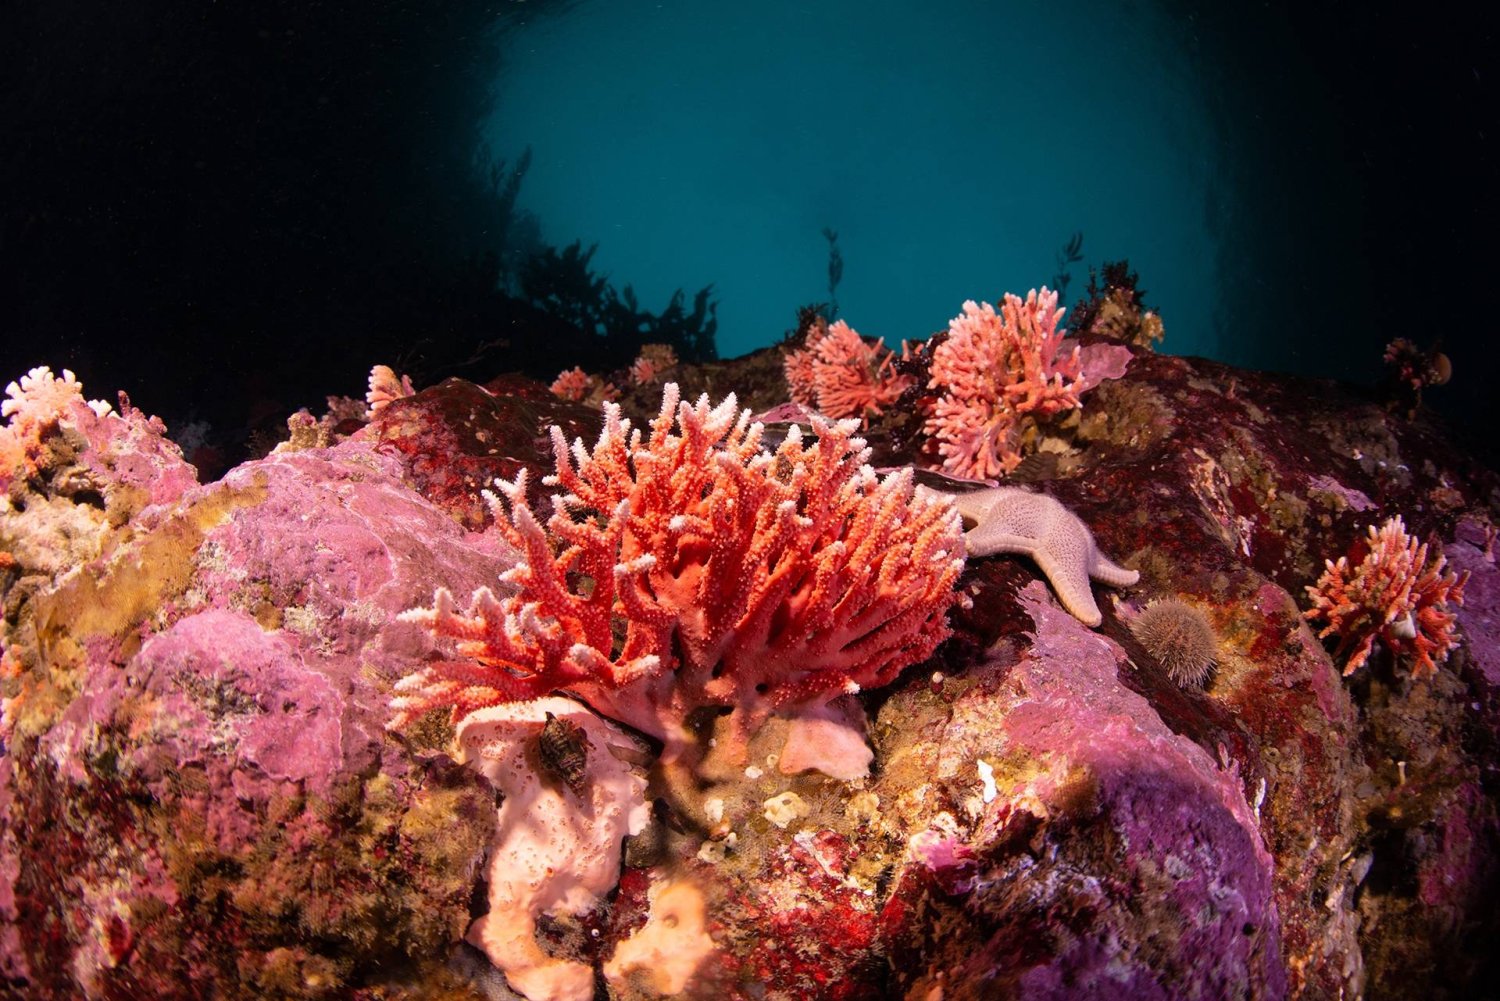 اكتشاف نوع من المرجان الأحمر في المياه القليلة العمق لمضيق ماجلان